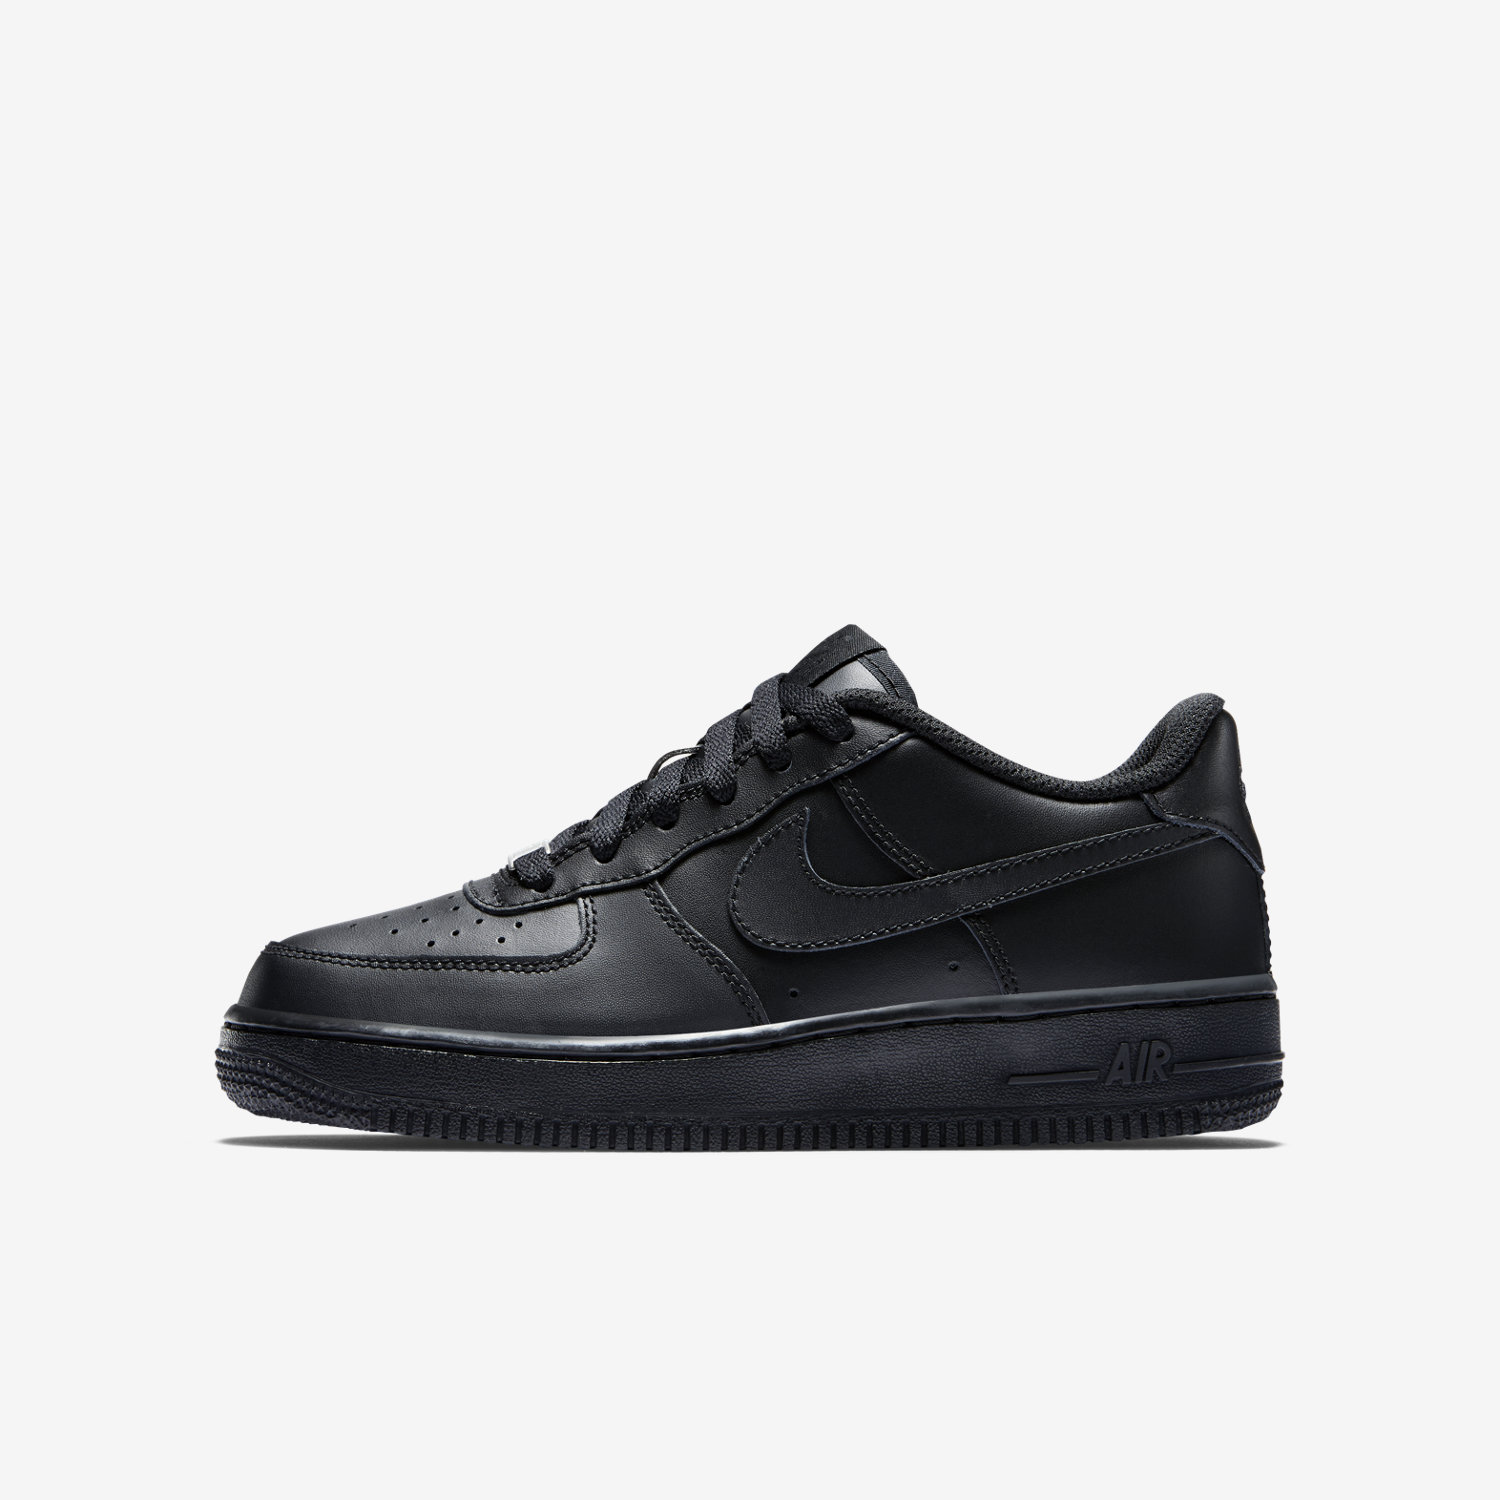 παπουτσια outdoor για κοριτσια Nike Air Force 1 μαυρα/μαυρα/μαυρα 74291992CR